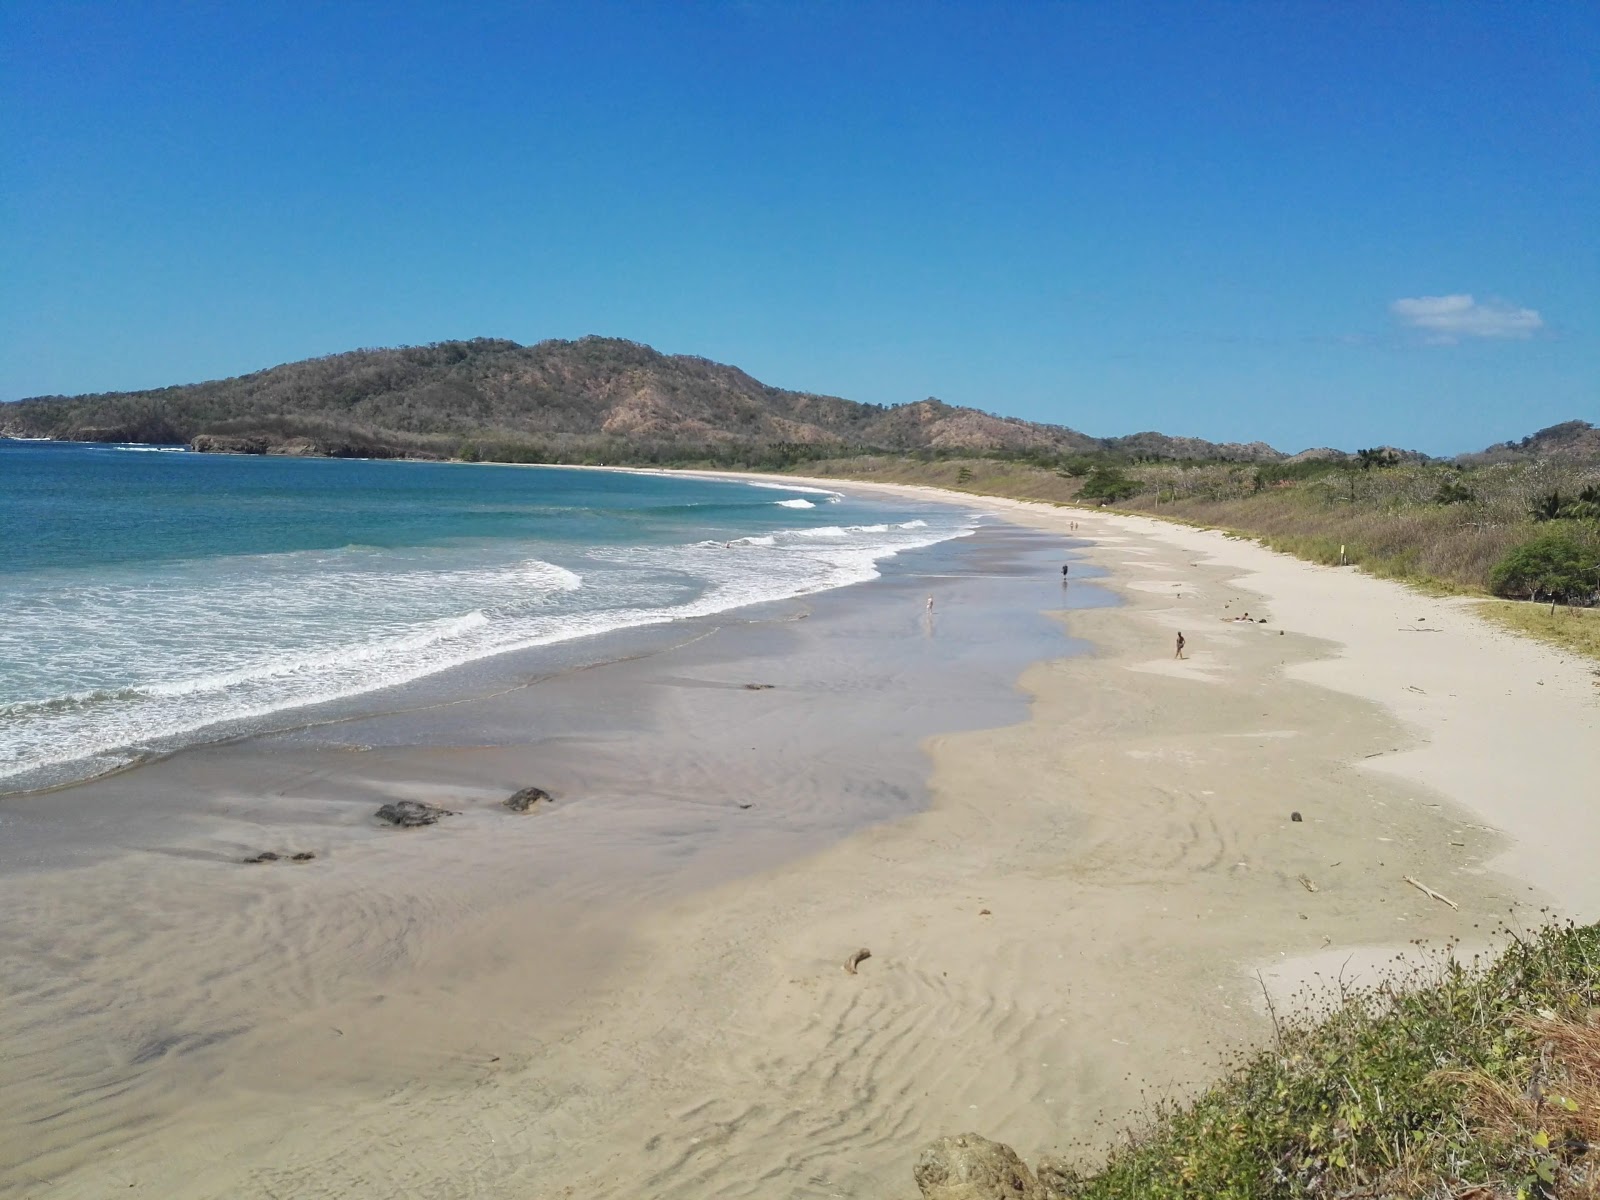 Fotografija Playa Ventanas priljubljeno mesto med poznavalci sprostitve